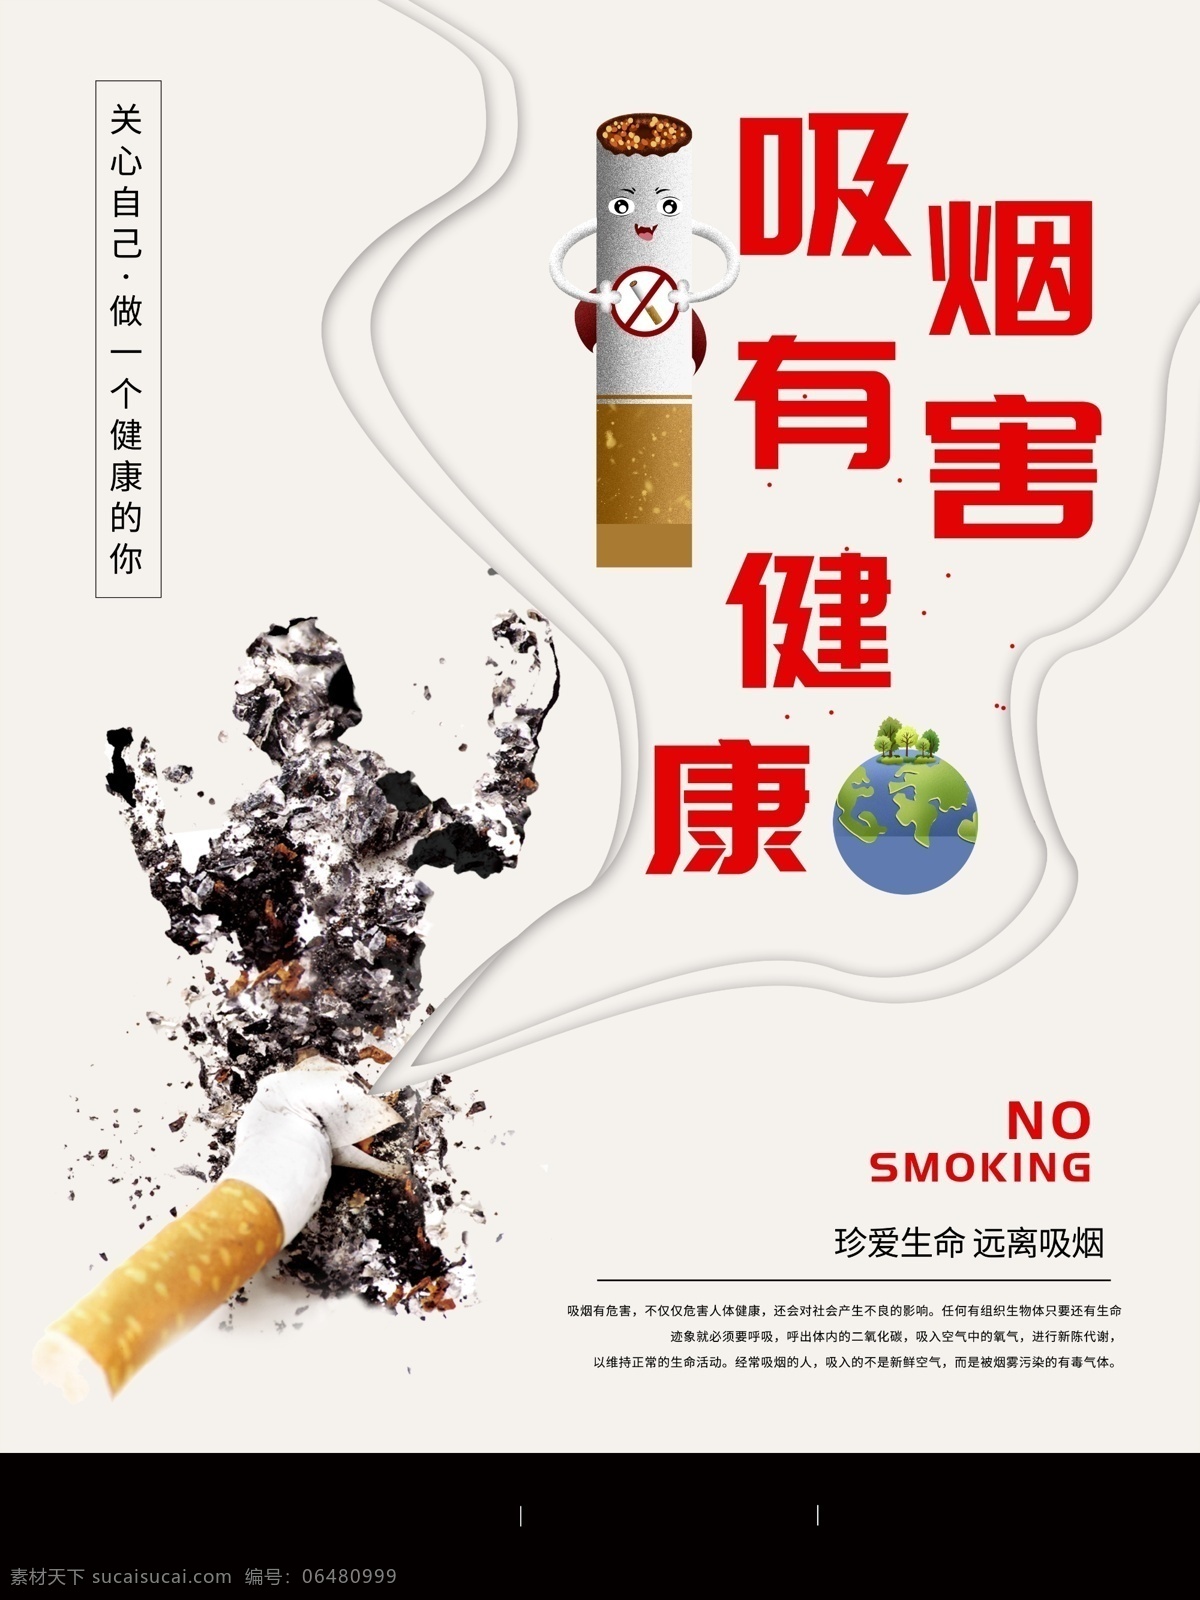 吸烟 有害 健康 公益 海报 公益海报 禁止吸烟 吸烟有害健康